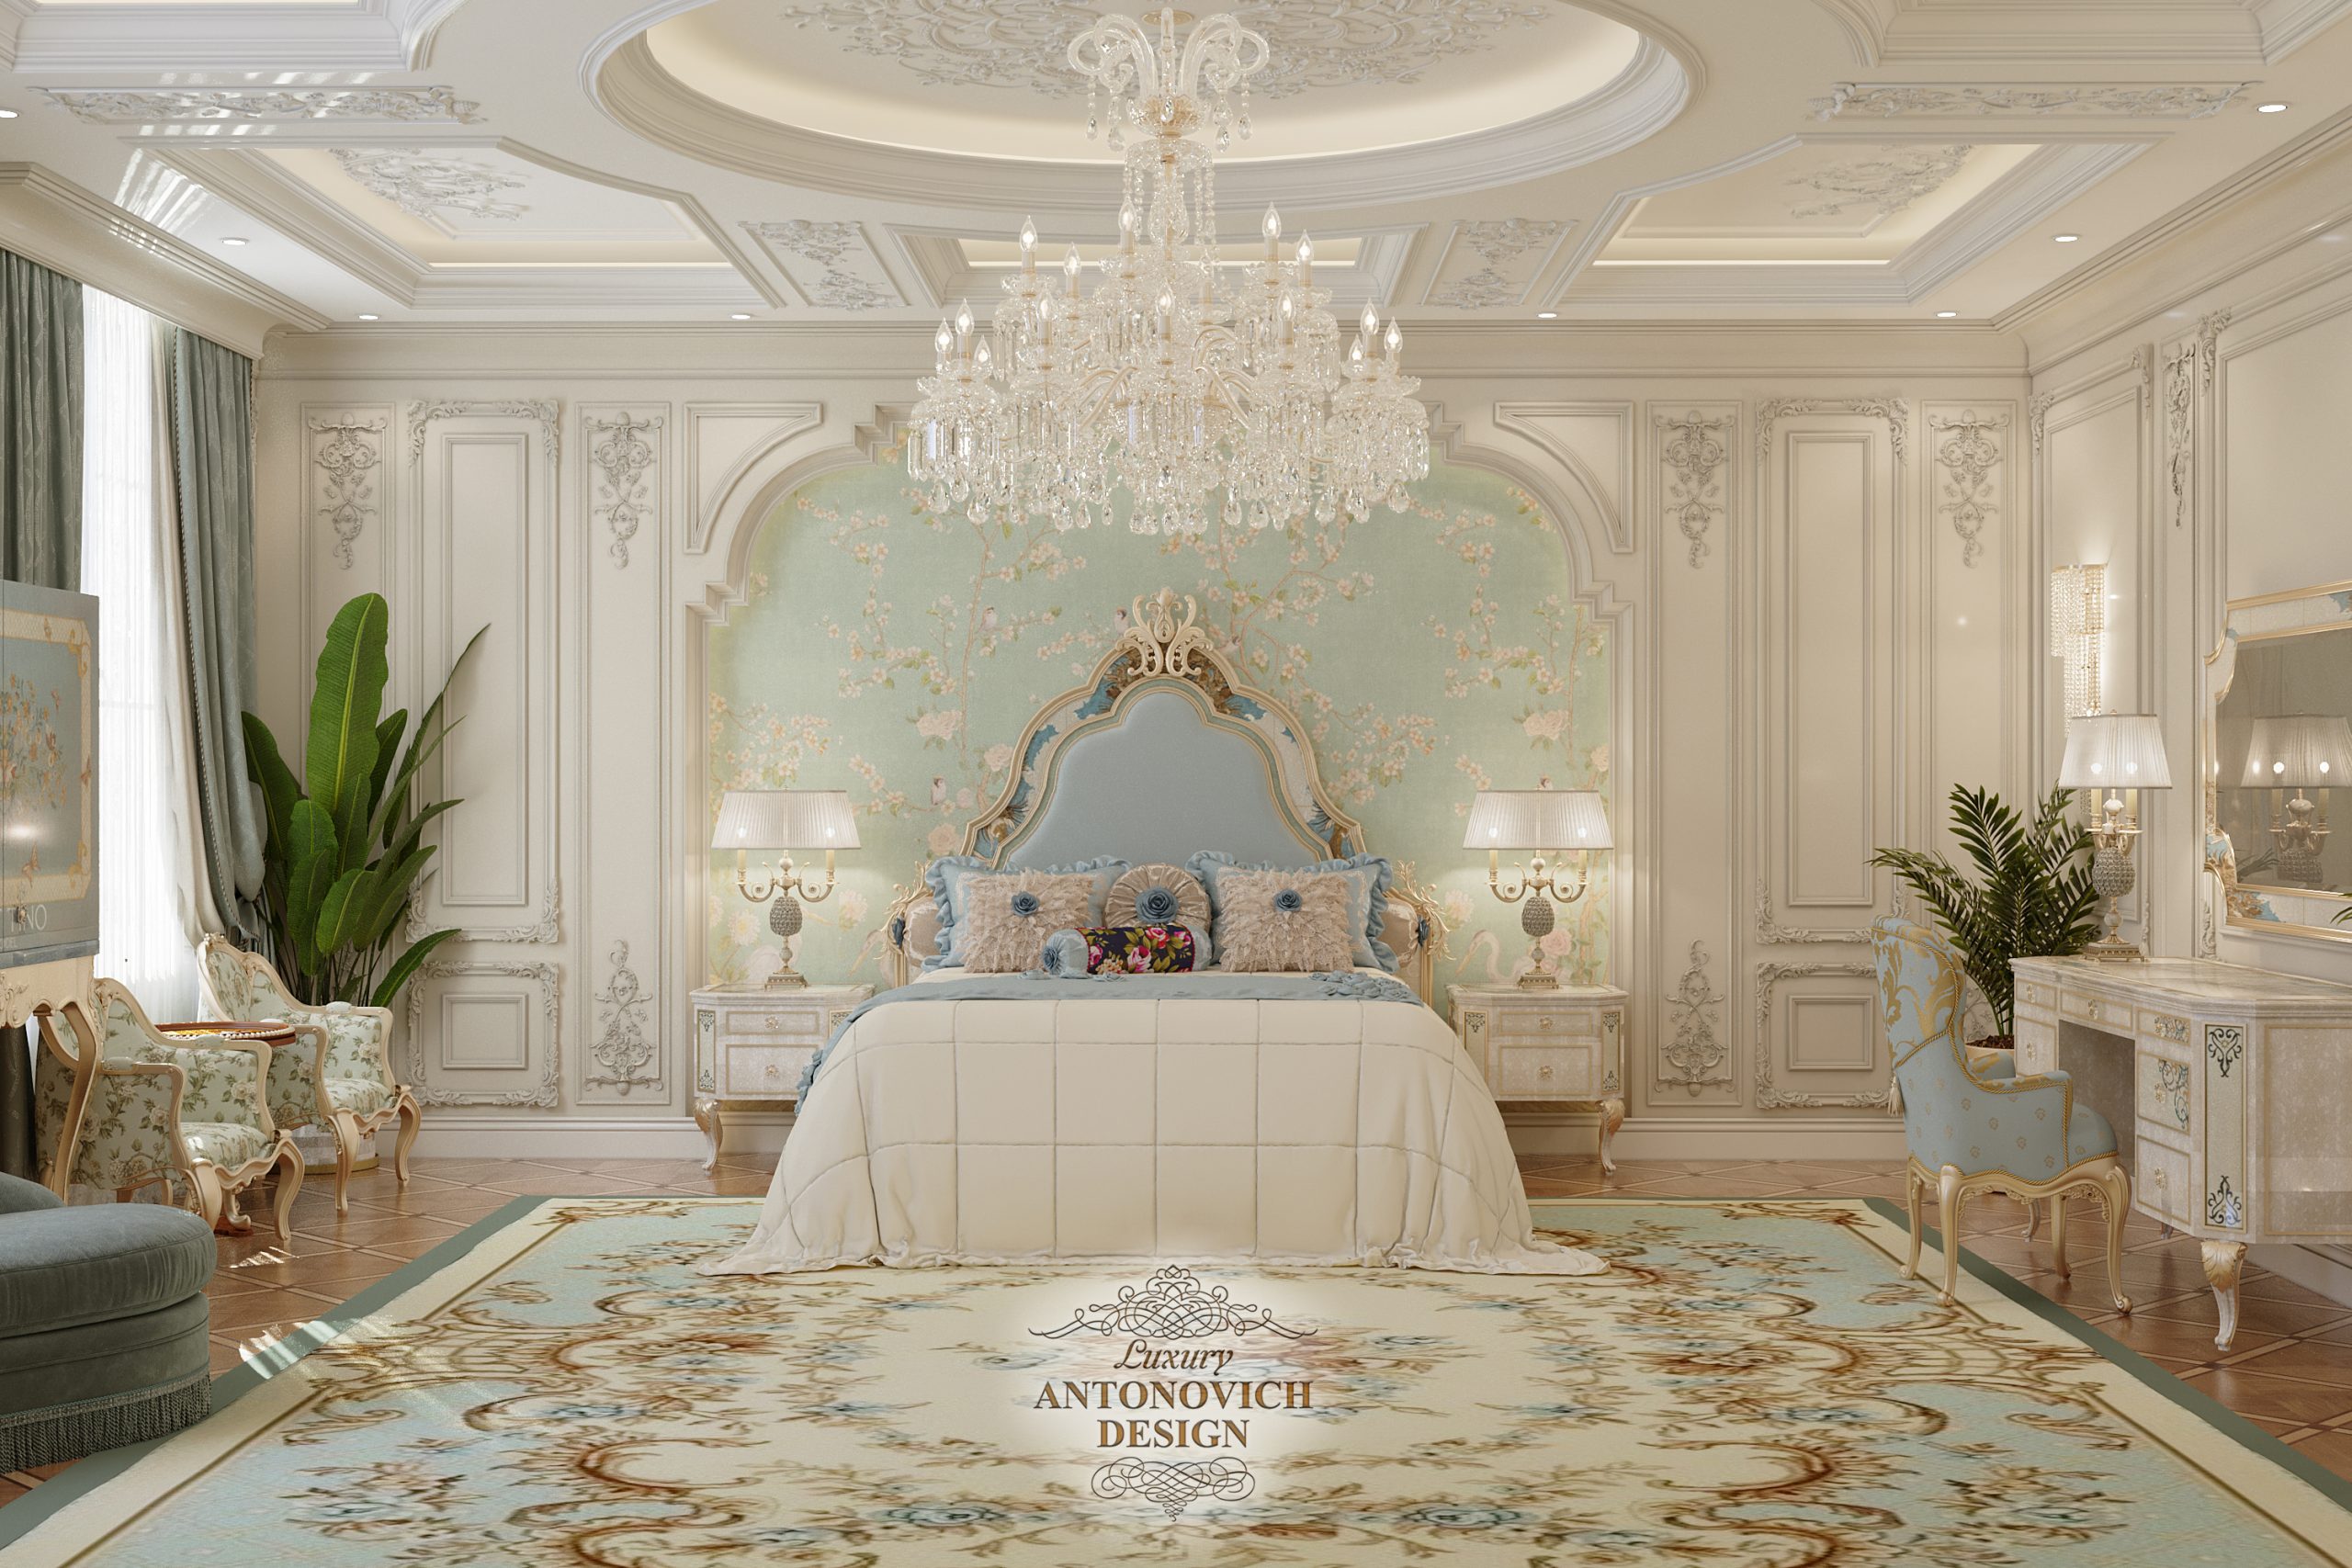 Изящное настенное панно с растительными мотивами , дорогой бархатный текстиль в интерьере спальни в роскошном классическом стиле